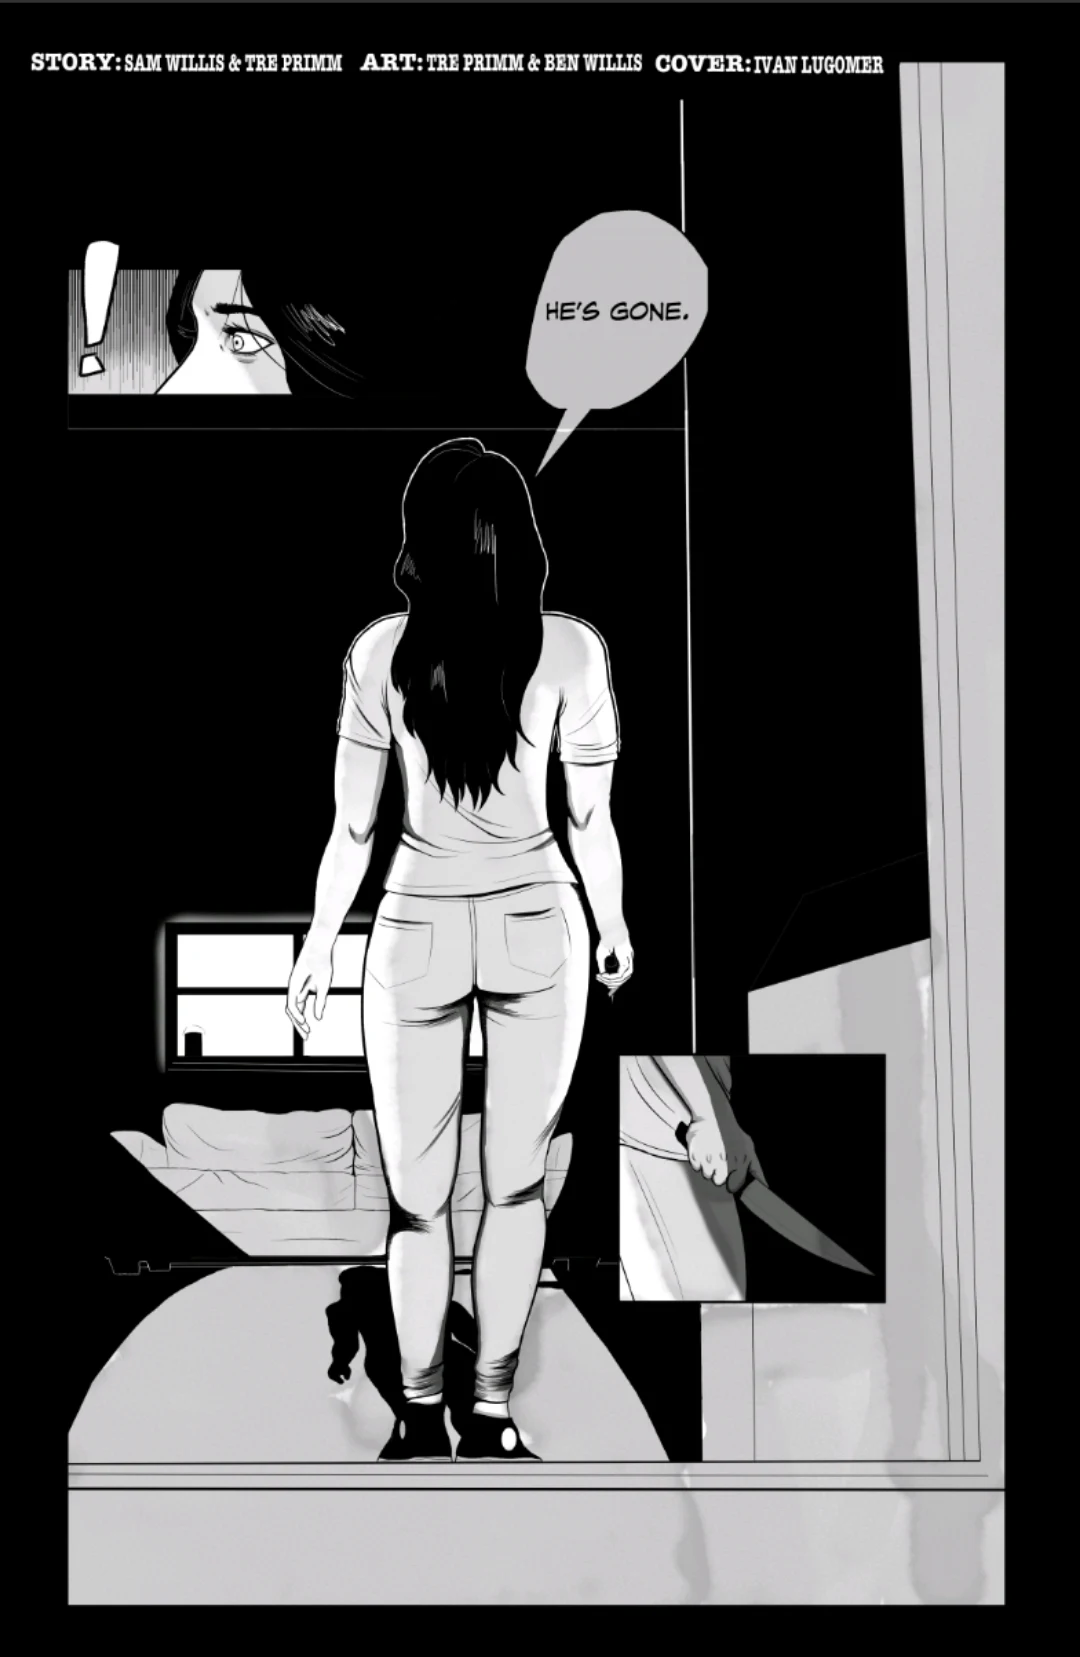 Victoria entering a dark room